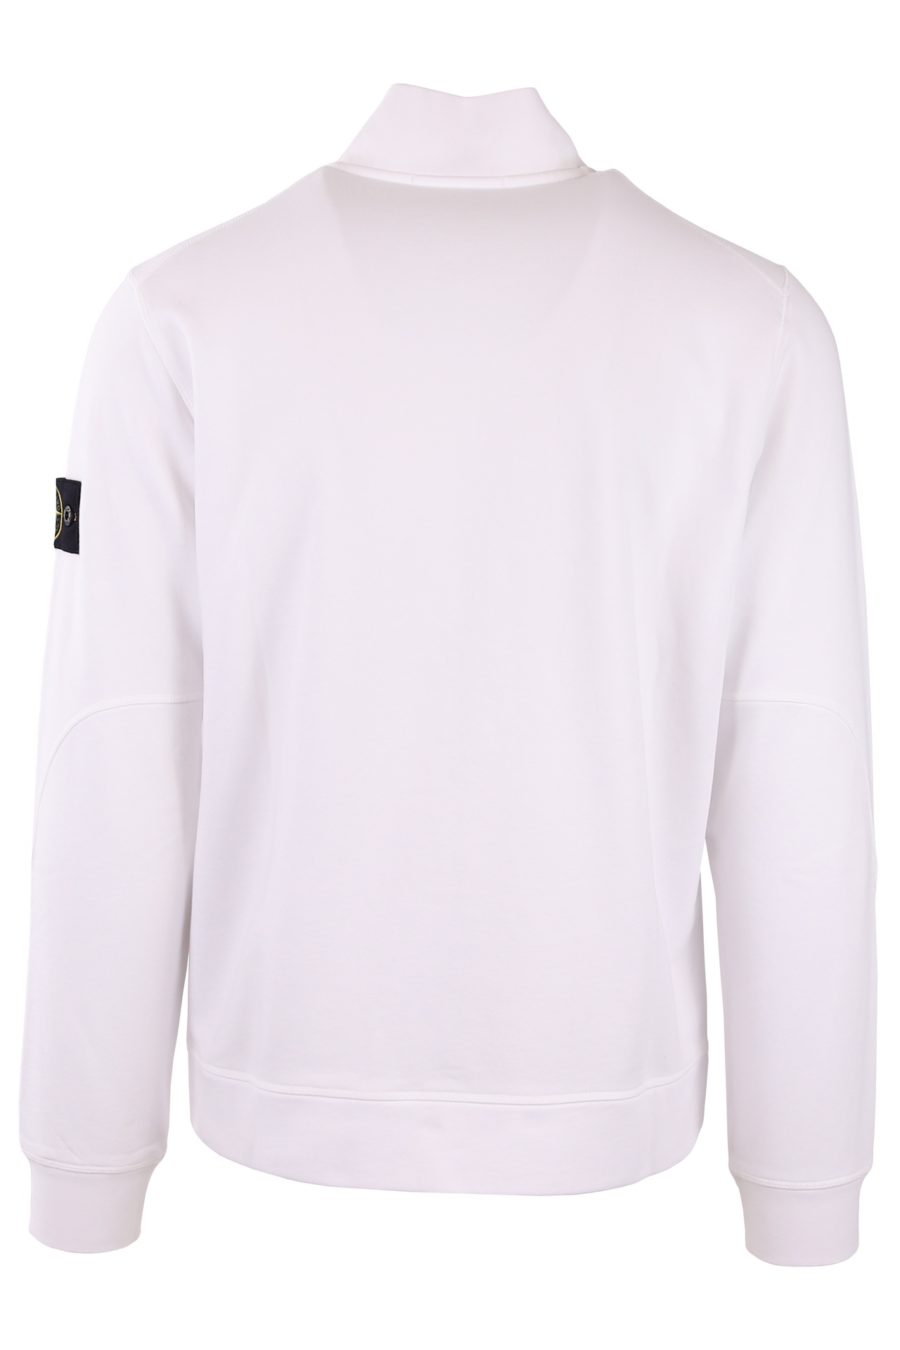 Stone Island weißes Sweatshirt mit Reißverschluss - 2f5829b79b54a1c02d2d30f97cee62045df71cfb